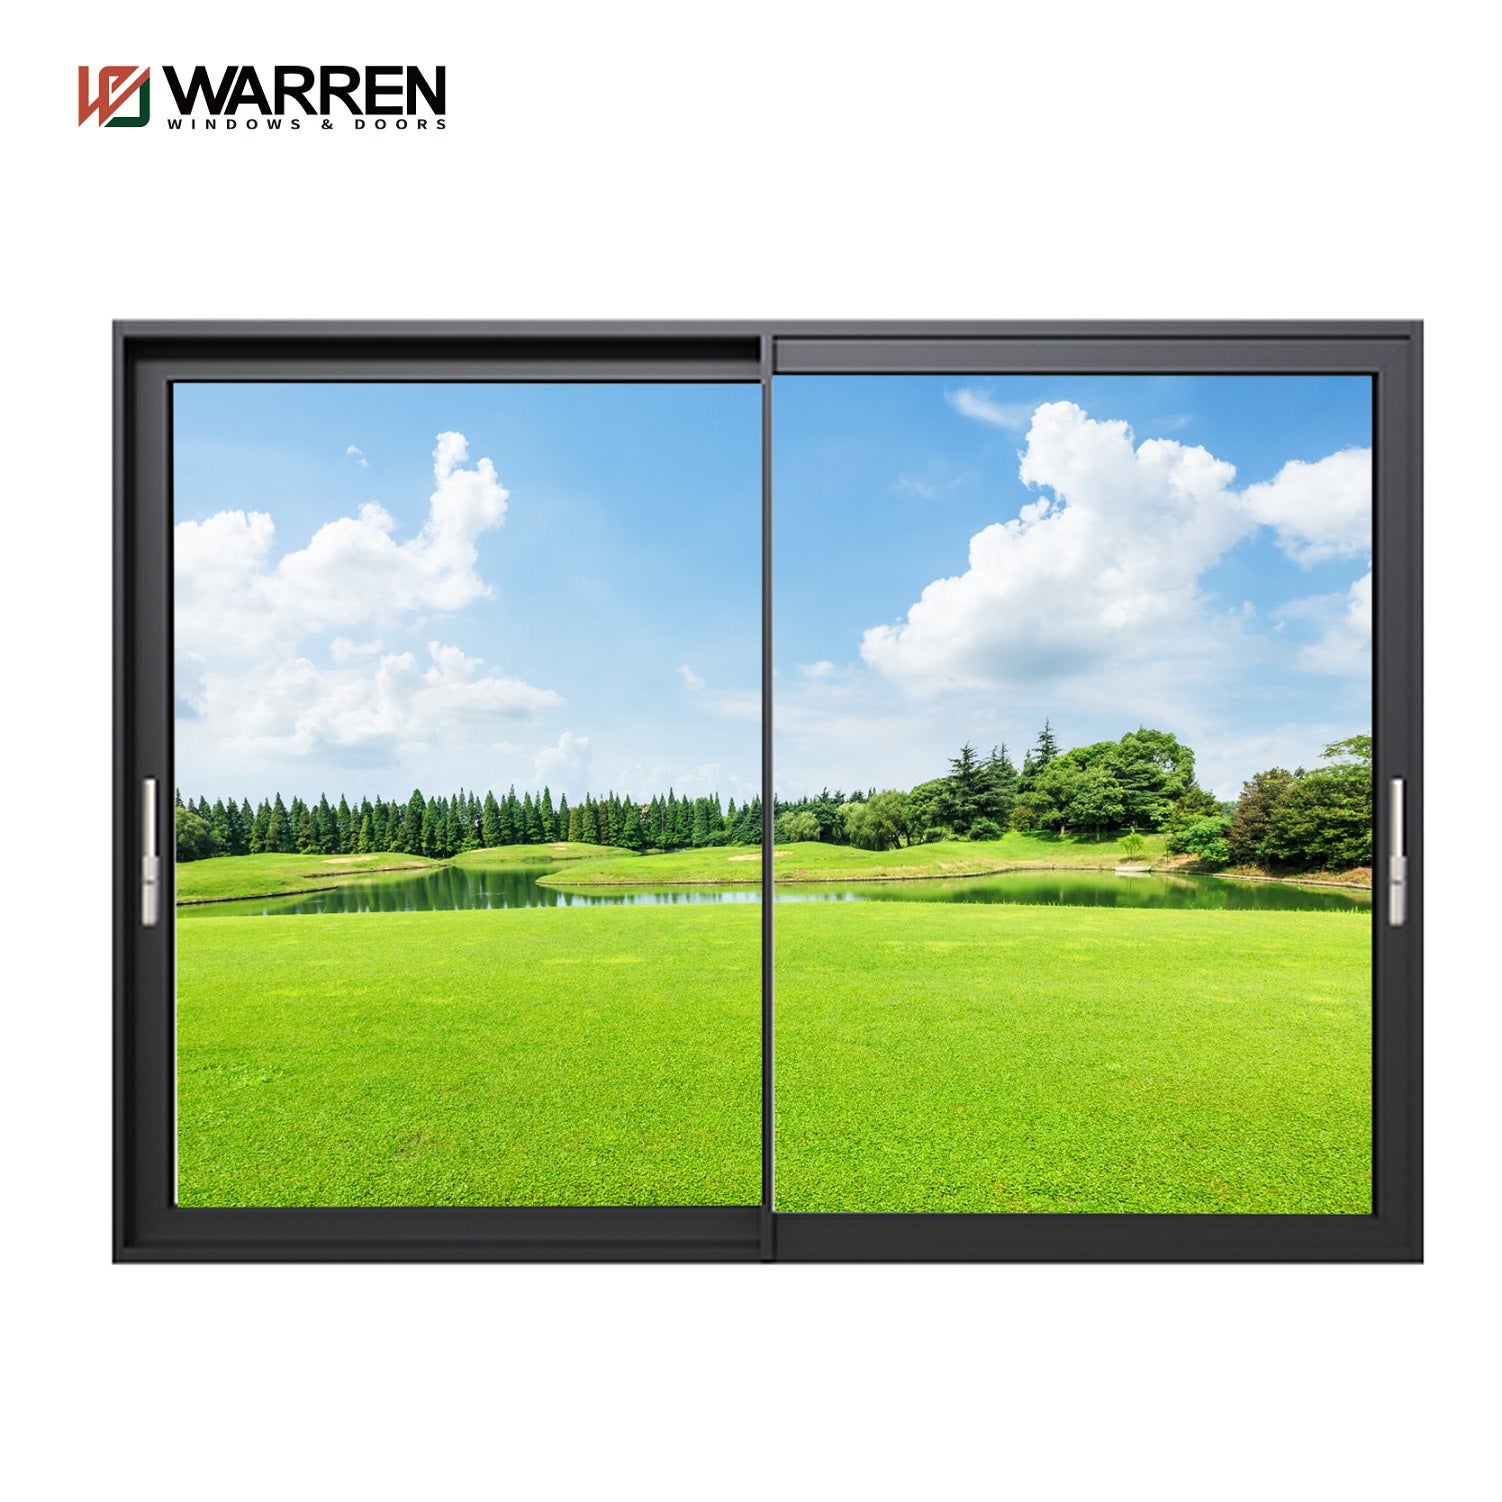 Warren Custom Aluminum Alloy Lift Sliding Doors Patio Doors Price Lowes Sliding Glass Doors